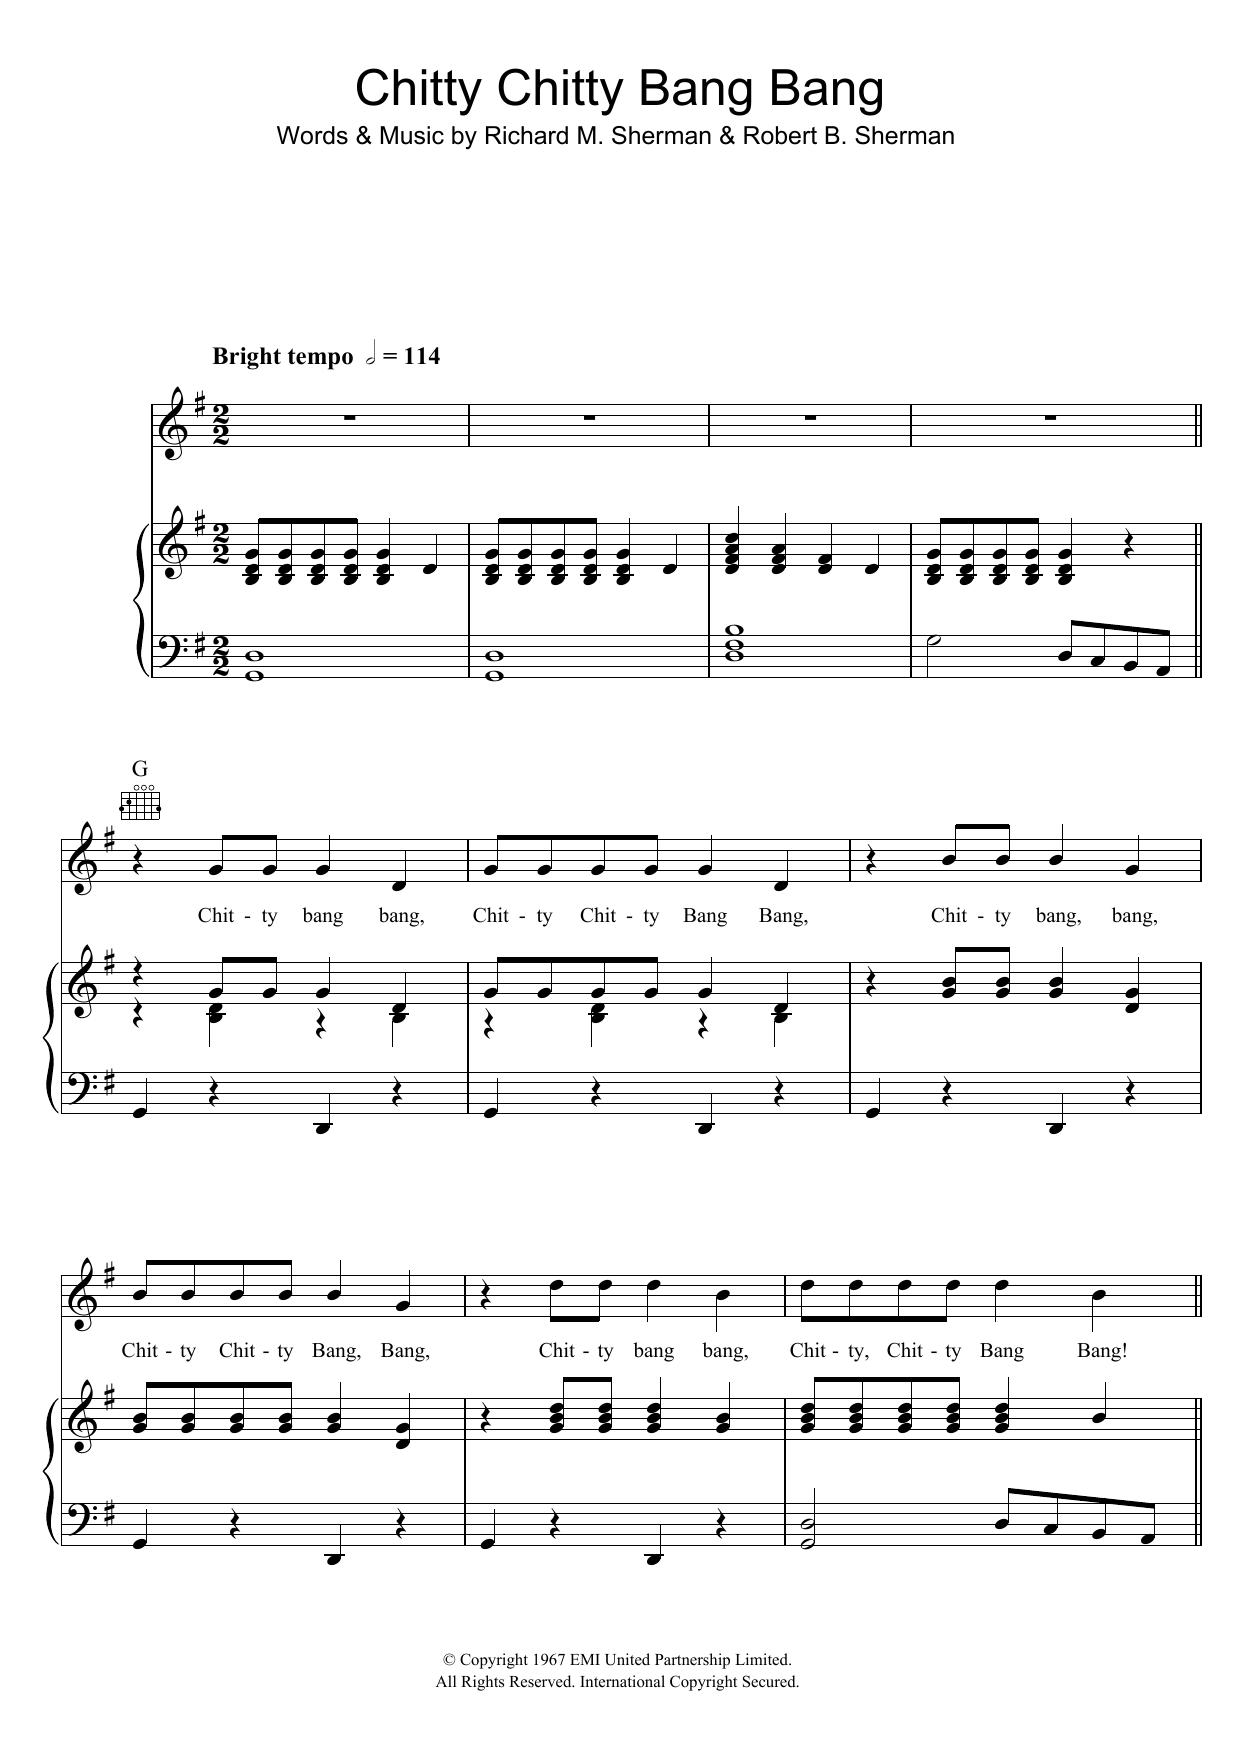 Dick Van Dyke Chitty Chitty Bang Bang Sheet Music Notes & Chords for Piano, Vocal & Guitar (Right-Hand Melody) - Download or Print PDF